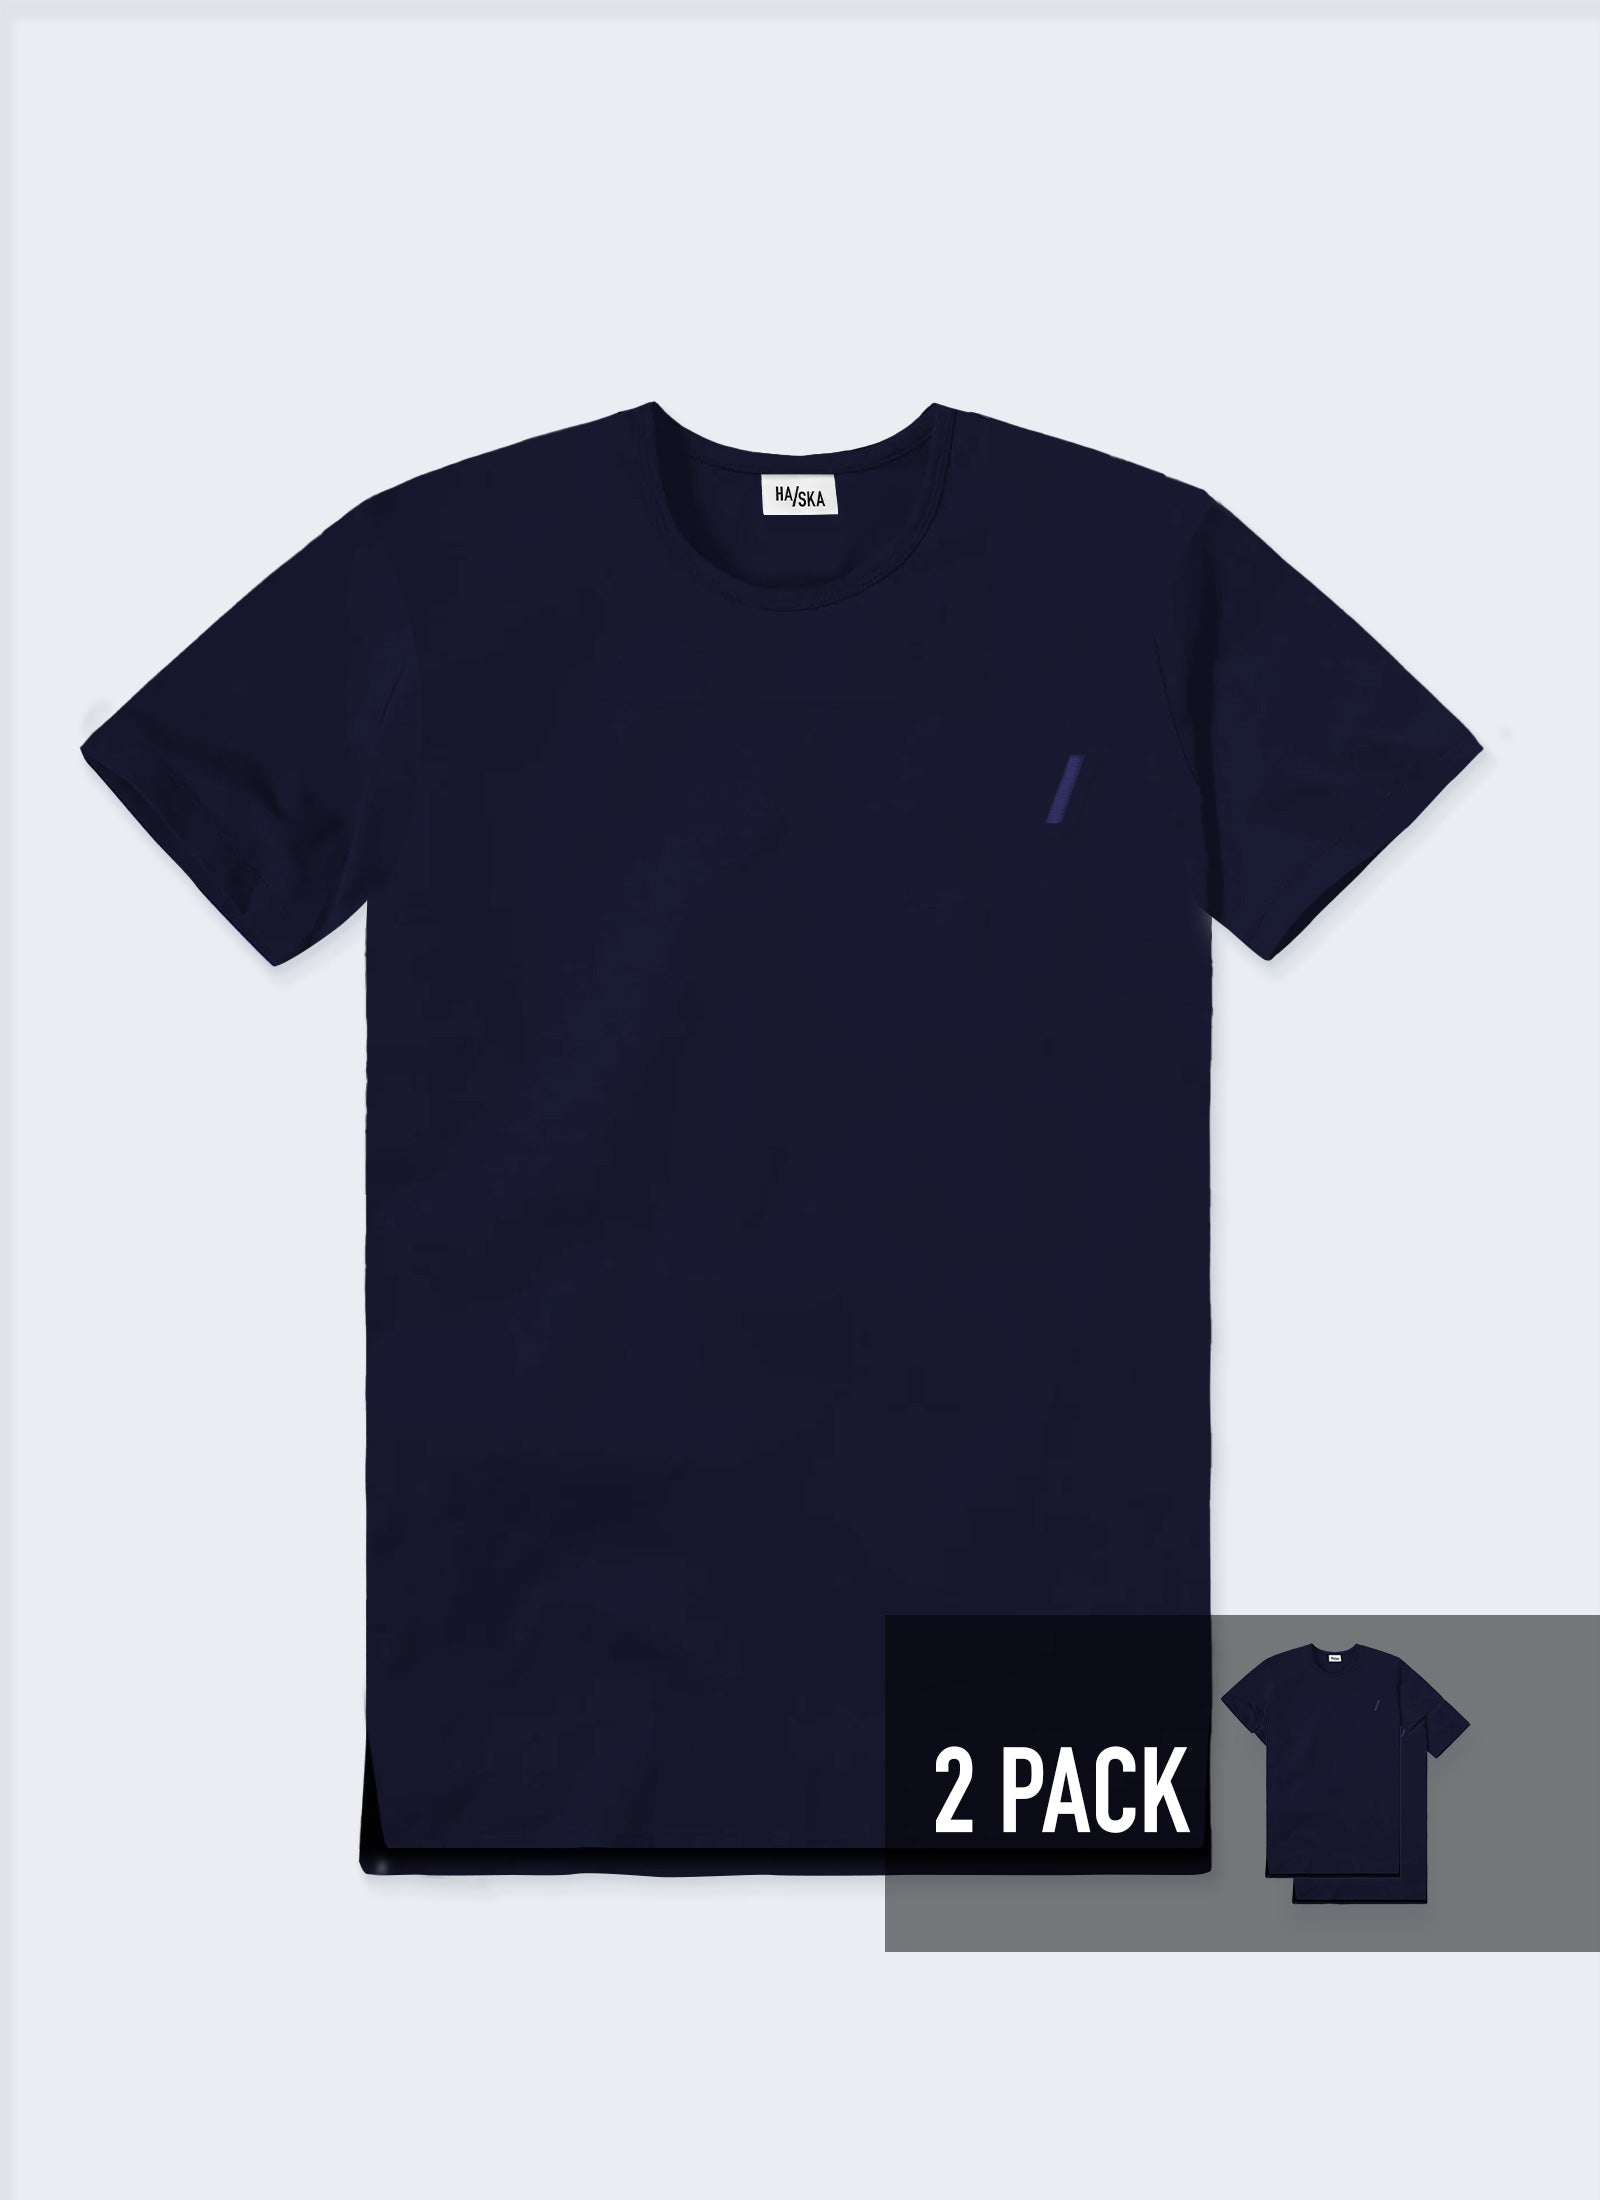 2 PACK / Modern Fit Australian-made Organic T-shirt